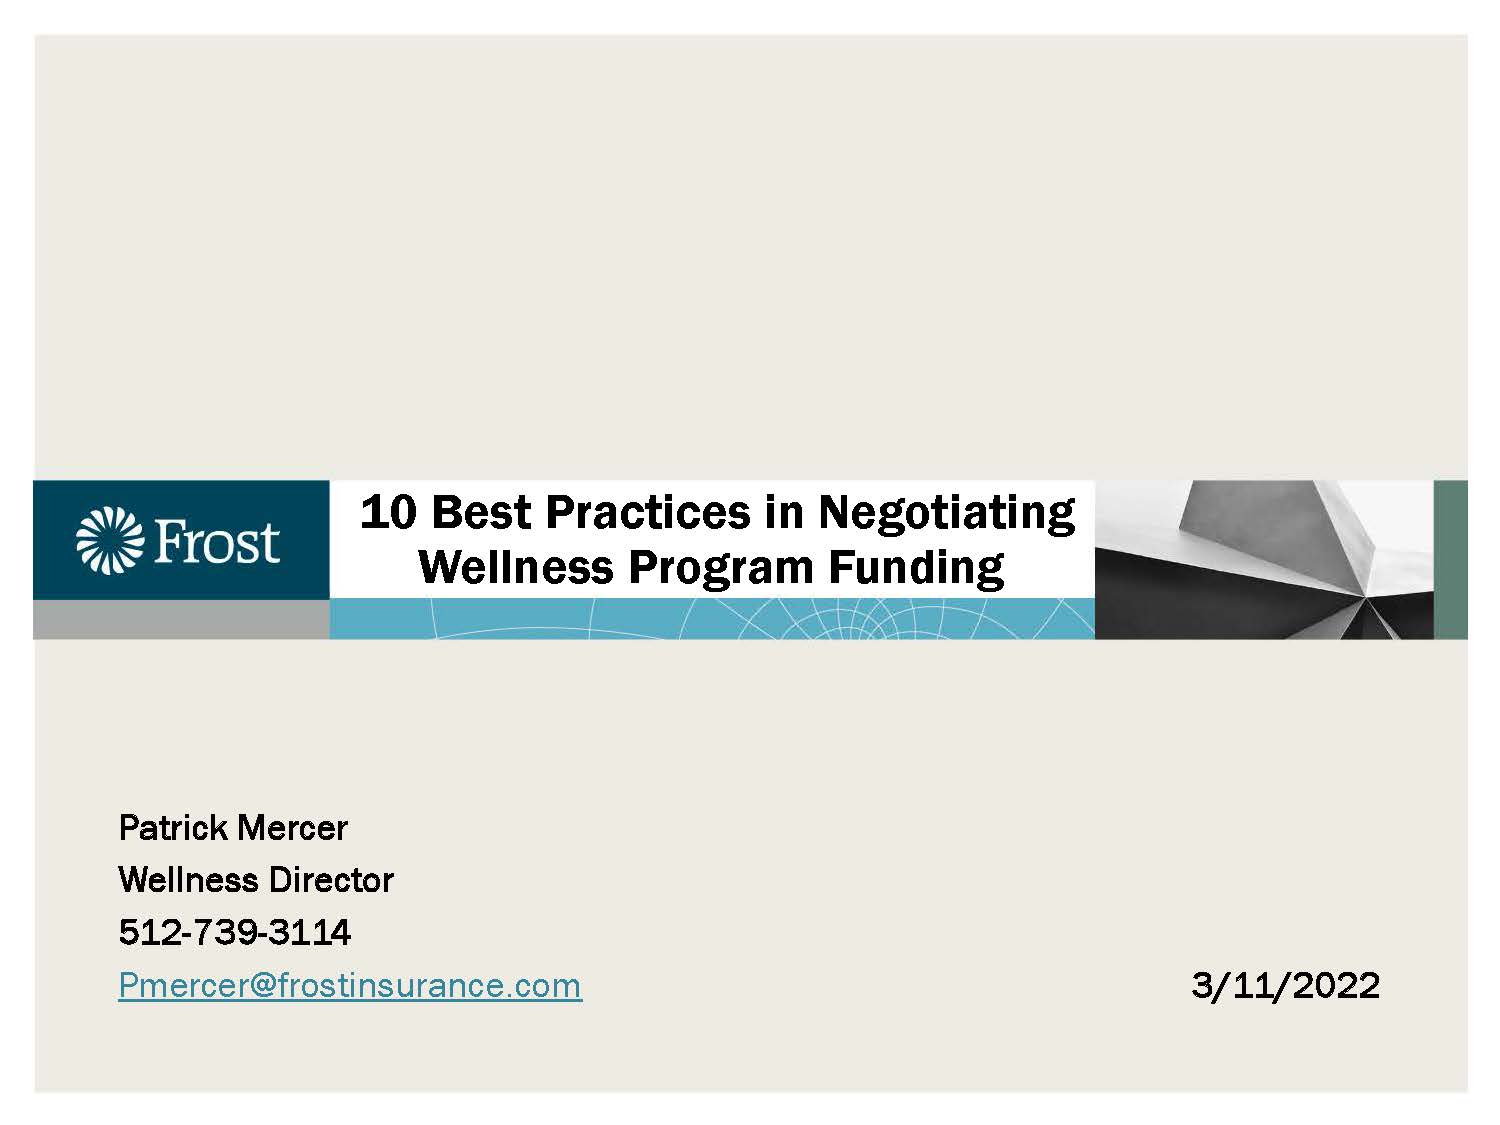 10 Best Practices in Negotiating Wellness Program Funding